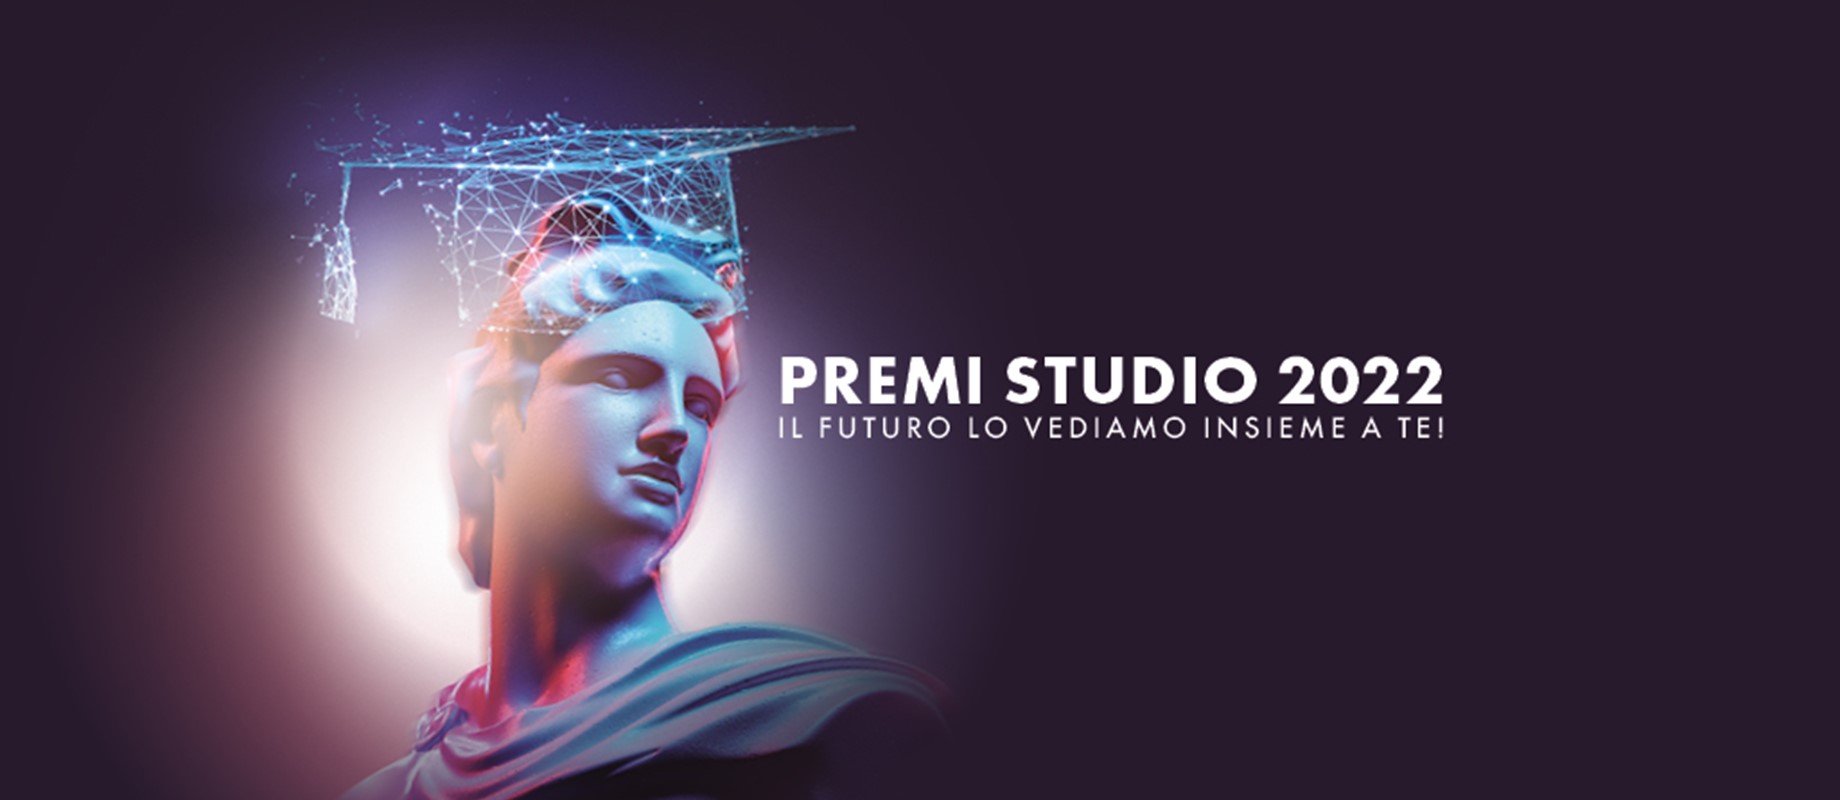 Premi Studio 2022 , la promozione che premia i soci meritevoli 